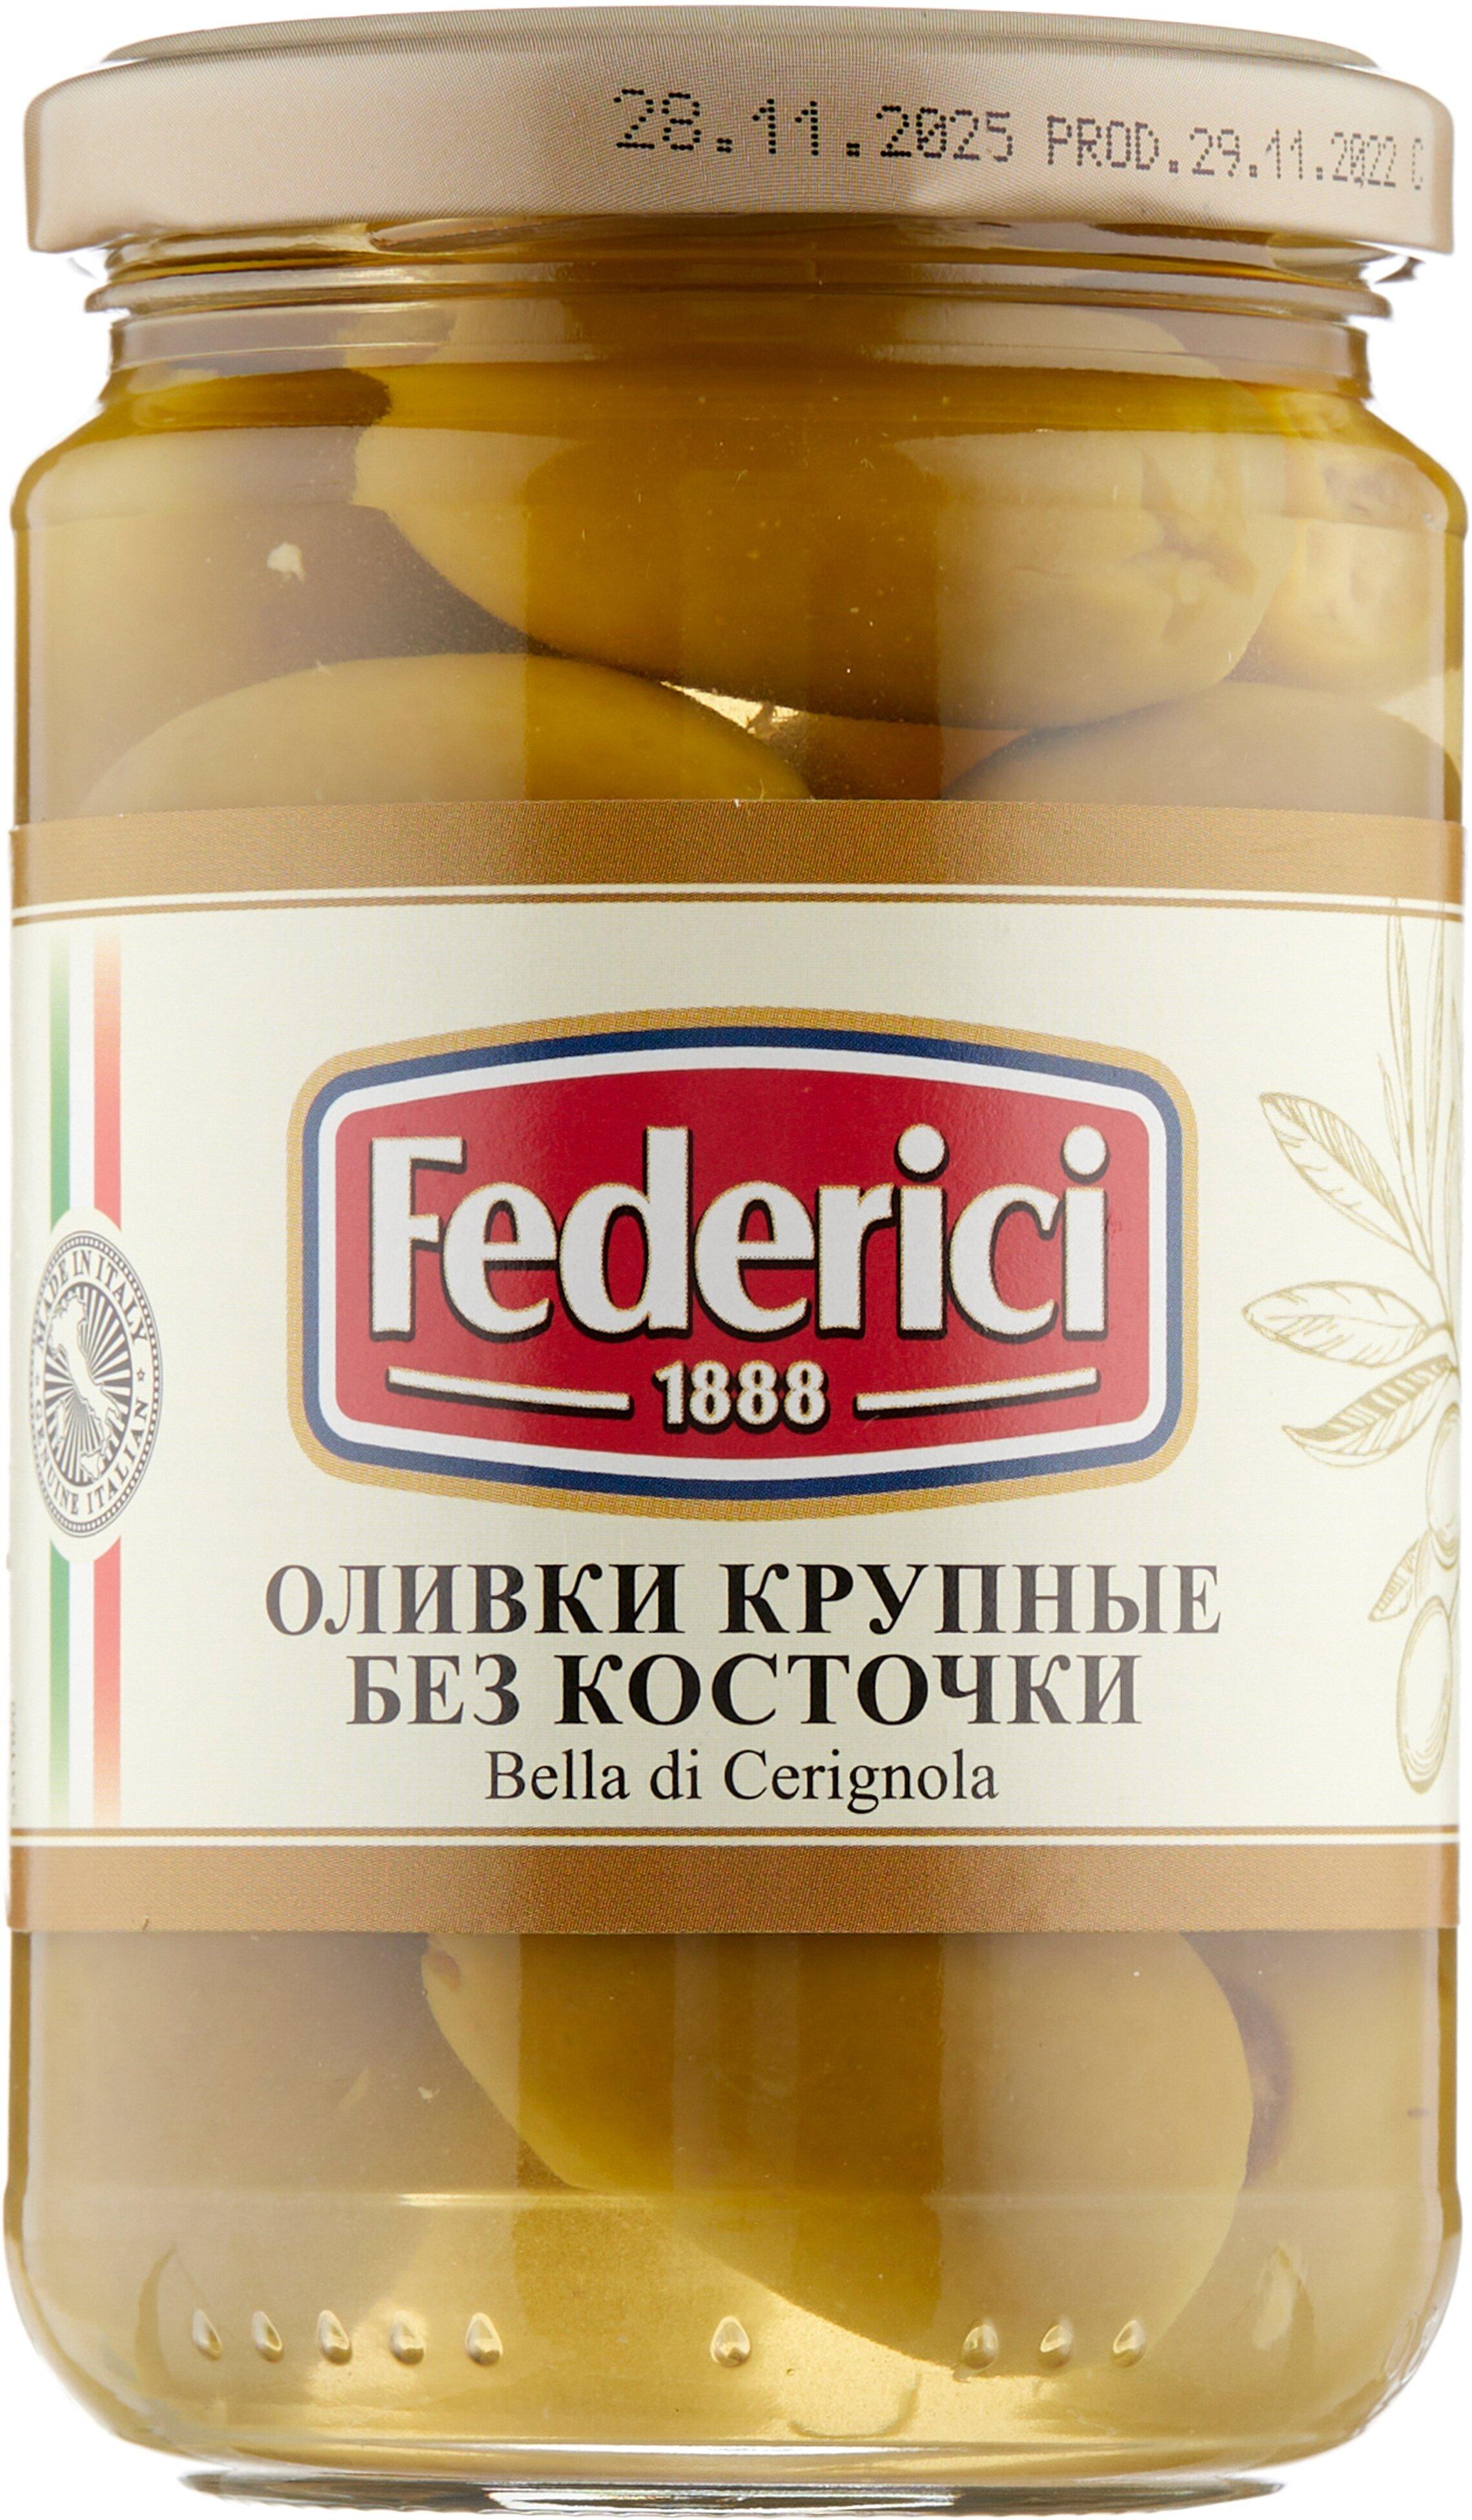 Оливки Federici Bella di cerignola крупные без косточки 300 гр., стекло